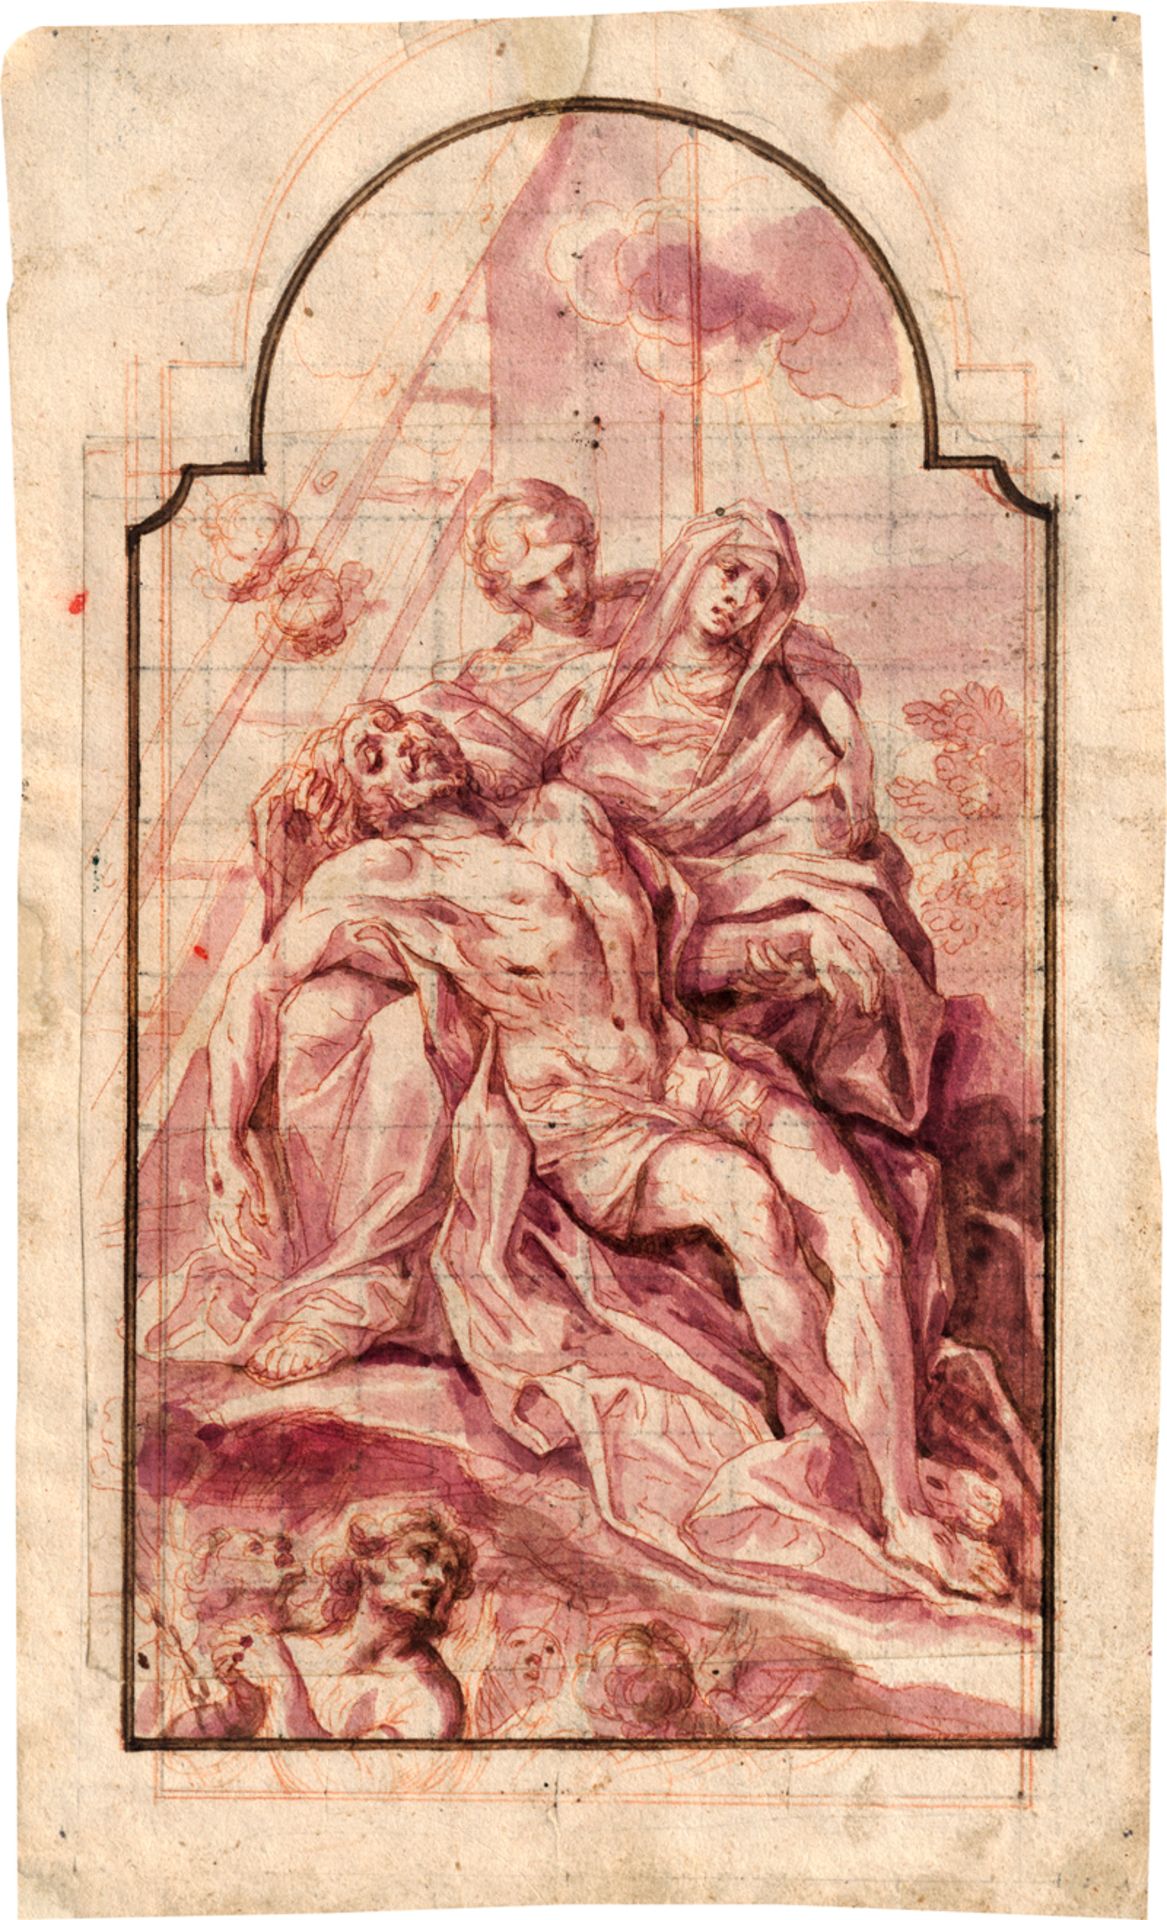 Süddeutsch: Mitte 18. Jh. Studie zu einem Altarblatt mit Pietà